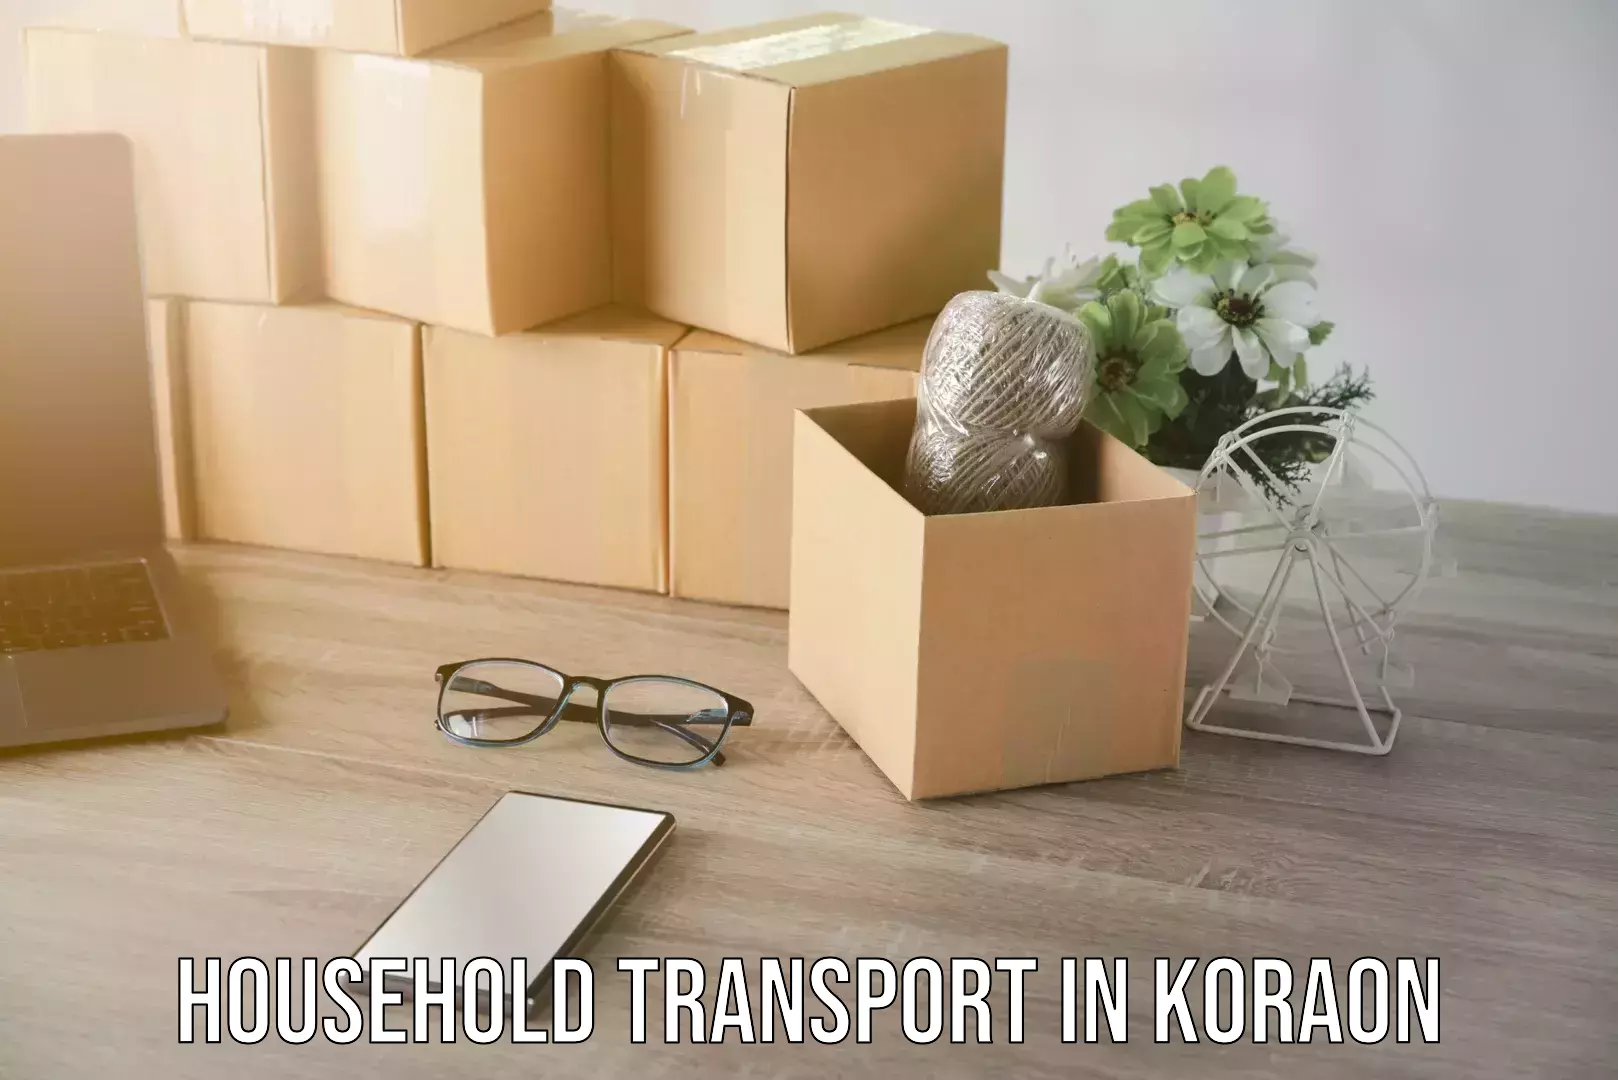 Expert household transport in Koraon